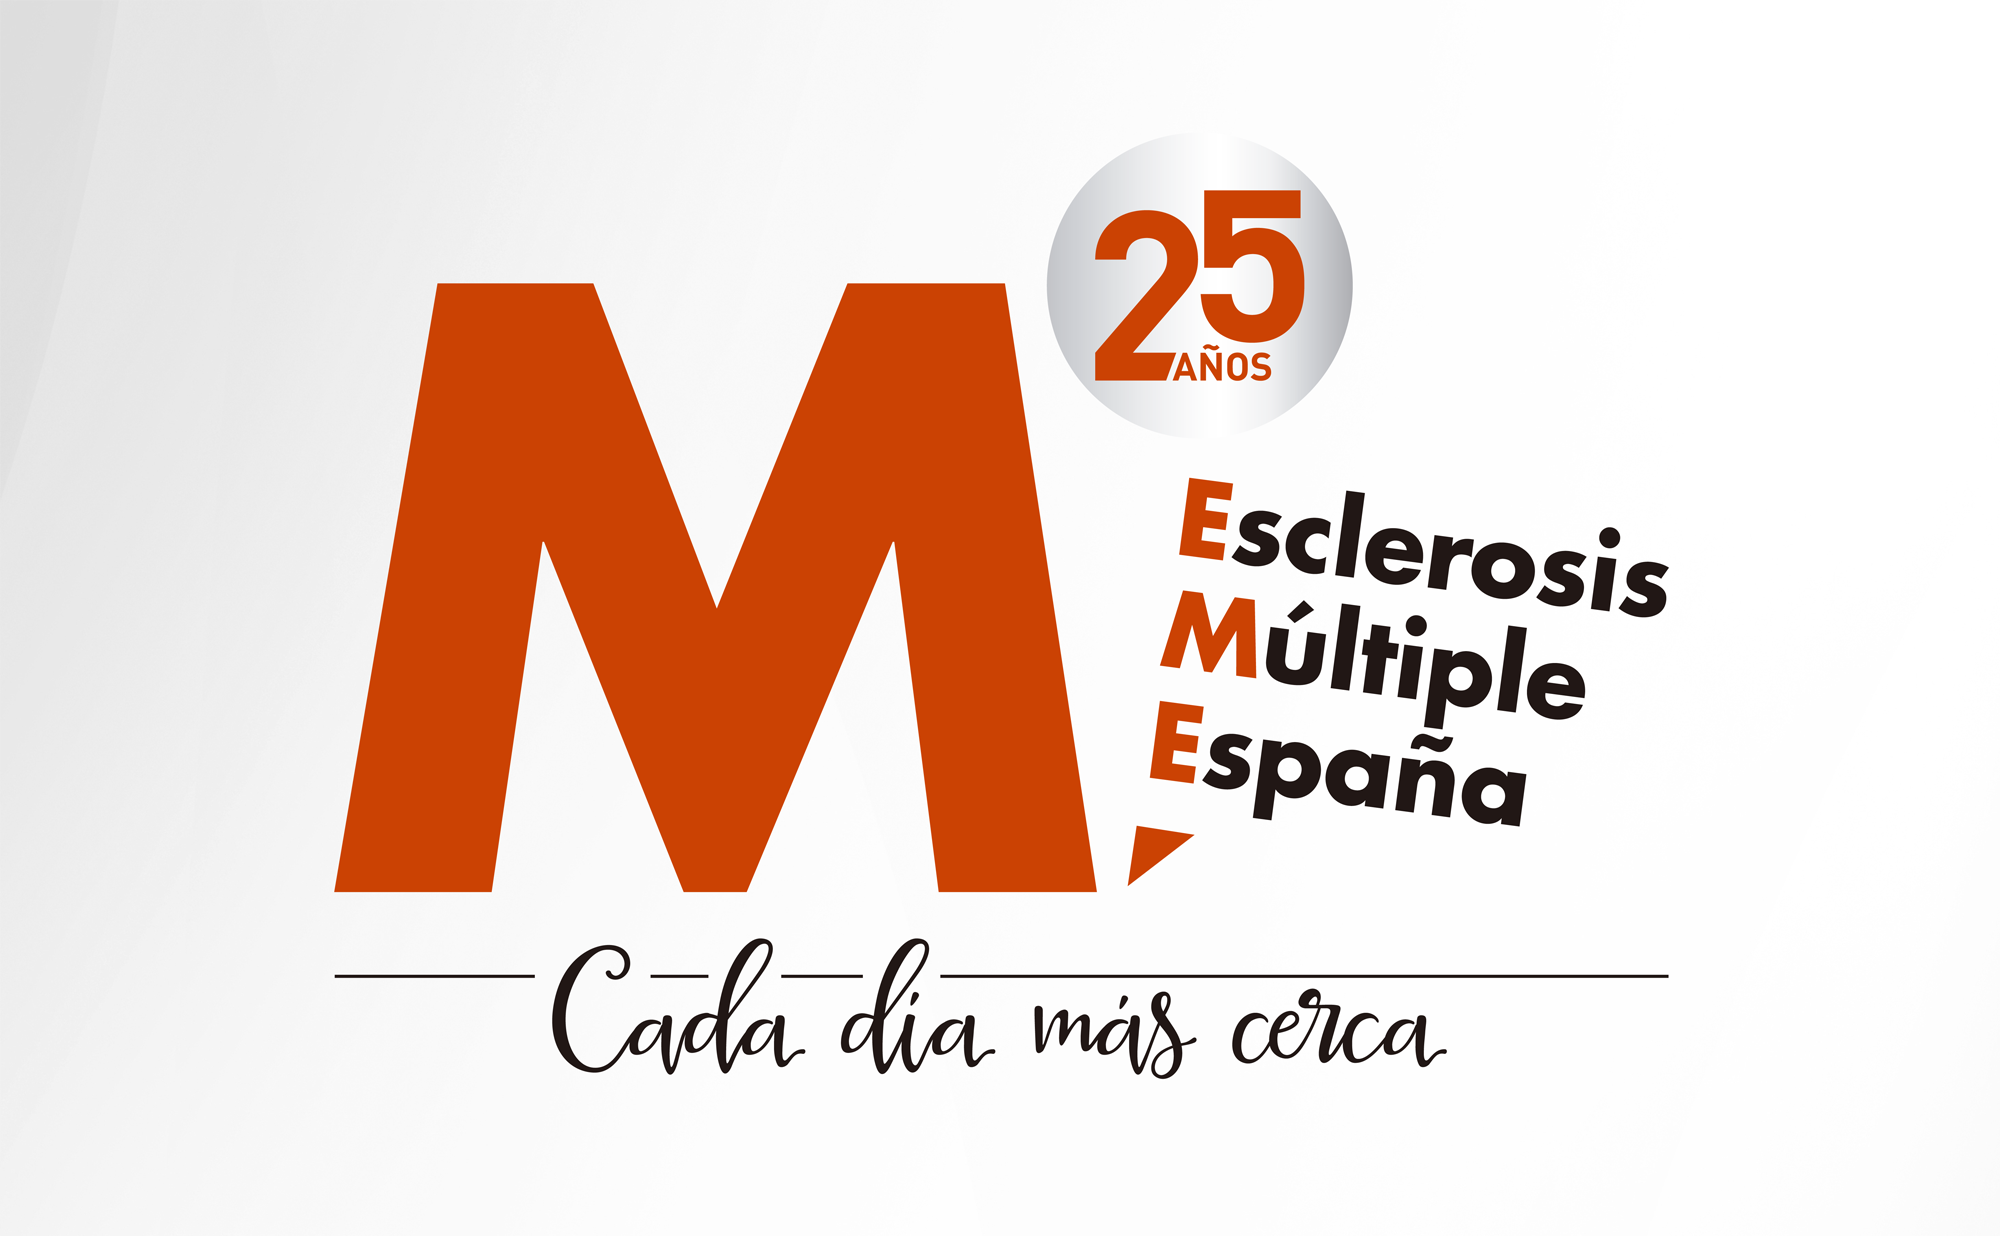 25 aniversario de EME: Bodas de plata de un compromiso con la comunidad de personas con Esclerosis Múltiple